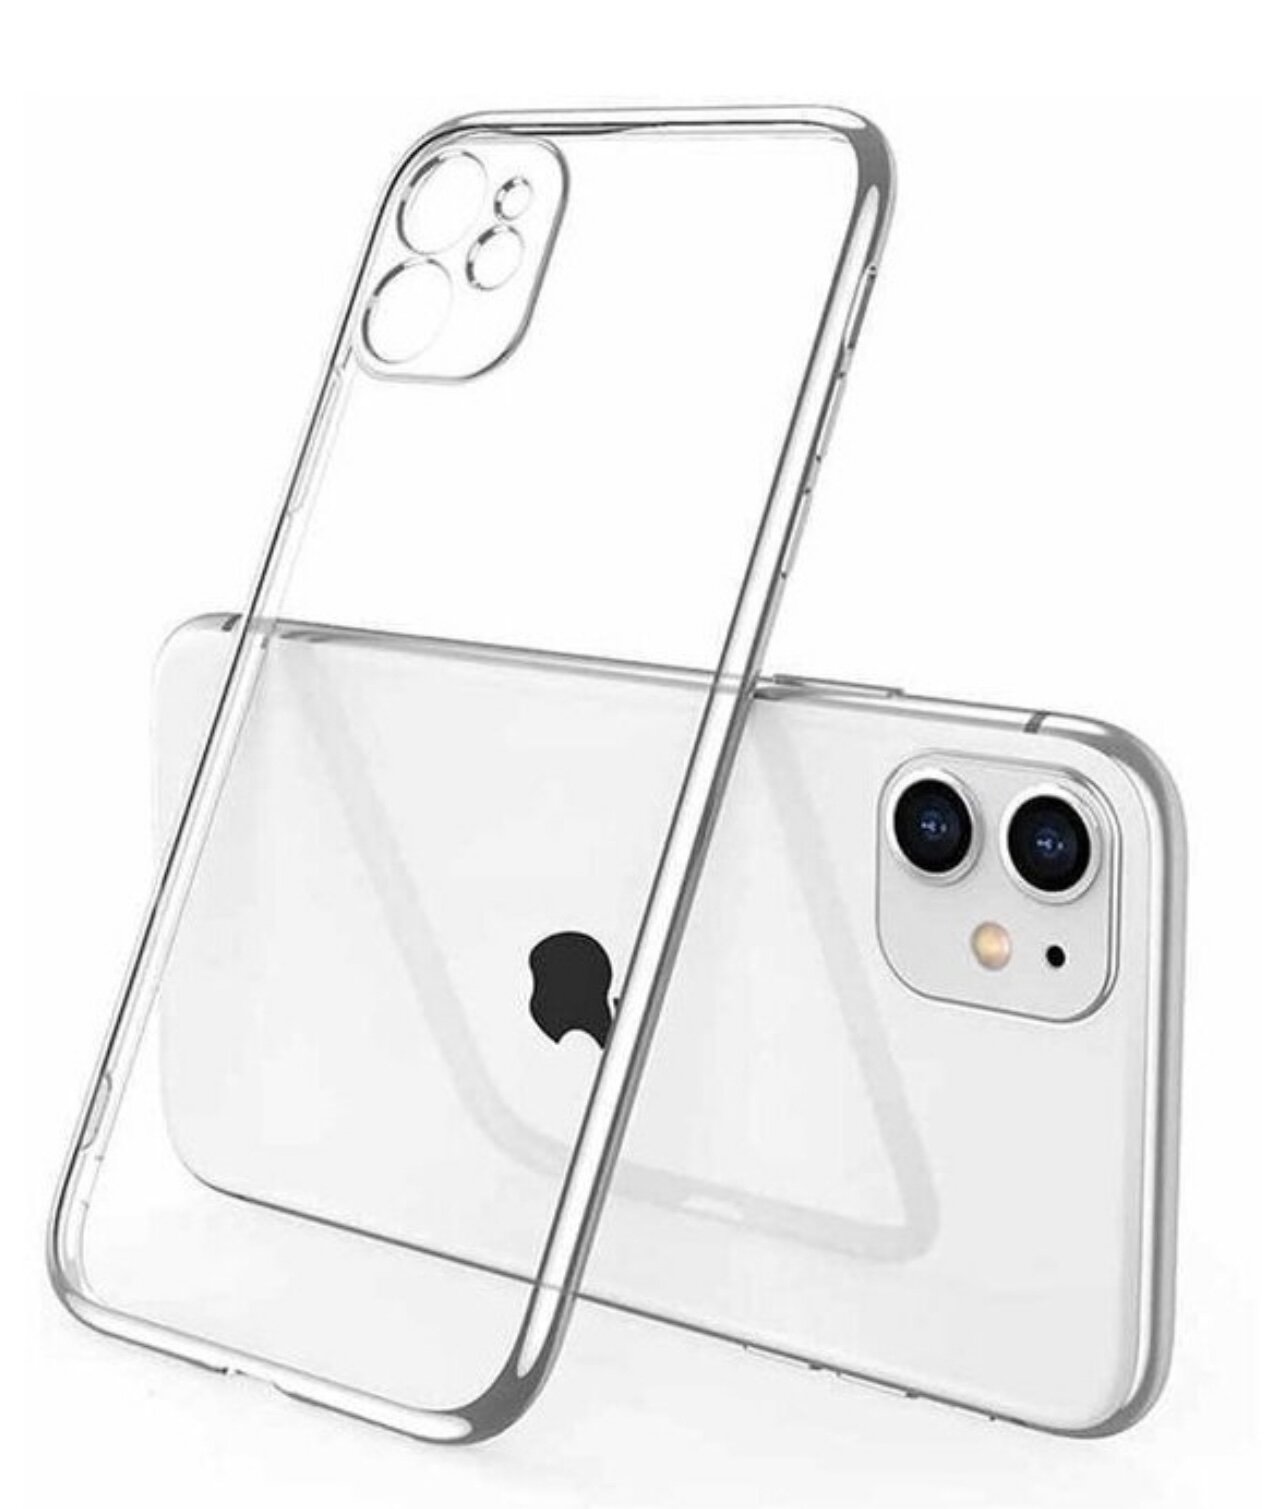 Чехол на Apple iPhone 11 с защитой камеры / прозрачный / силиконовый для айфон 11